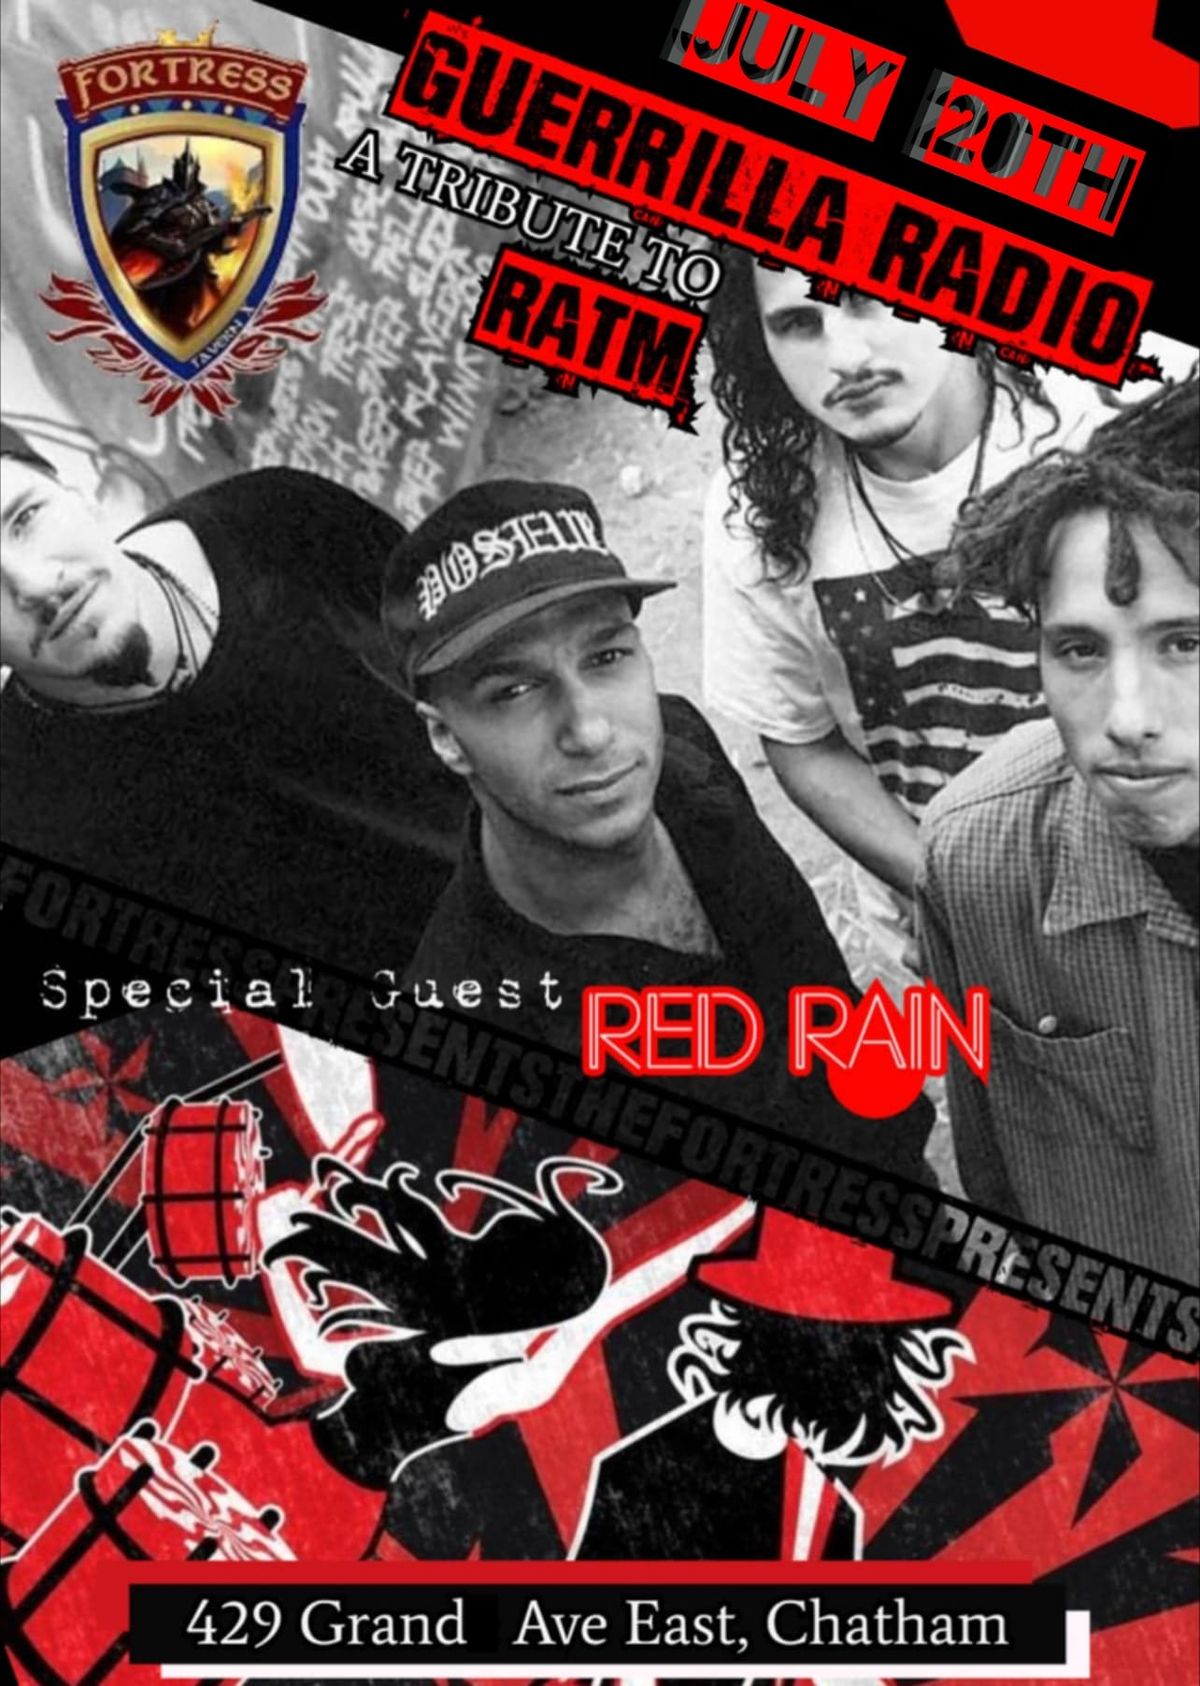 Guerrilla Radio wsg Red Rain @ The Fortress Tavern X